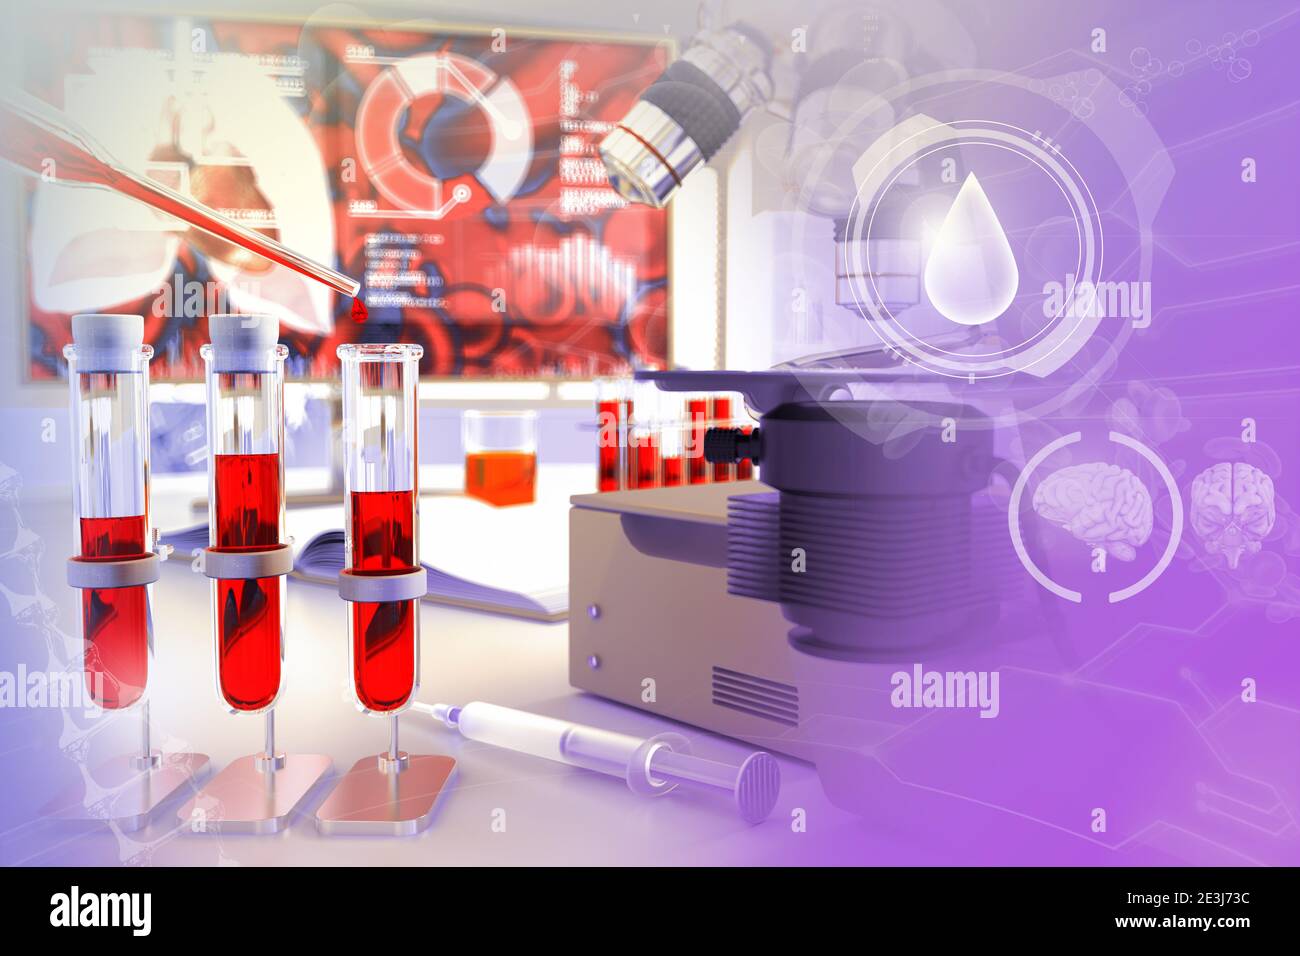 Tubes à essai dans le bureau de biotechnologie - test d'adn sanguin pour l'hémoglobine ou les aides, illustration médicale 3D avec superposition de gradient créative Banque D'Images